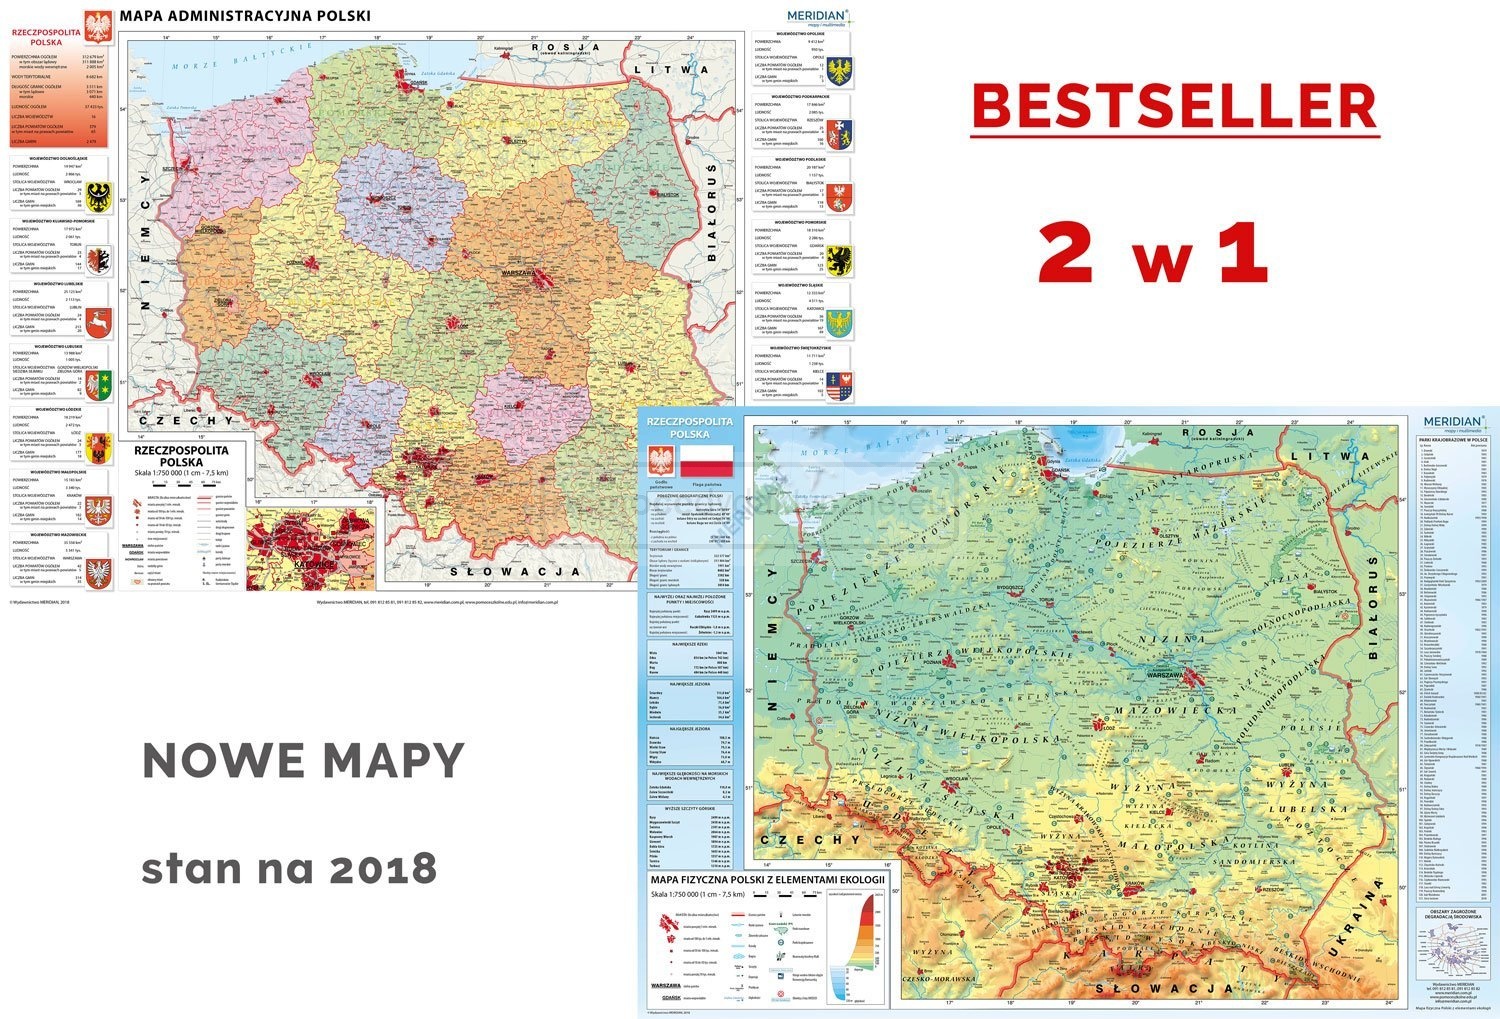 DUO Mapa administracyjna Polski / Polska fizyczna z elementami ekologii - dwustronna mapa ścienna 